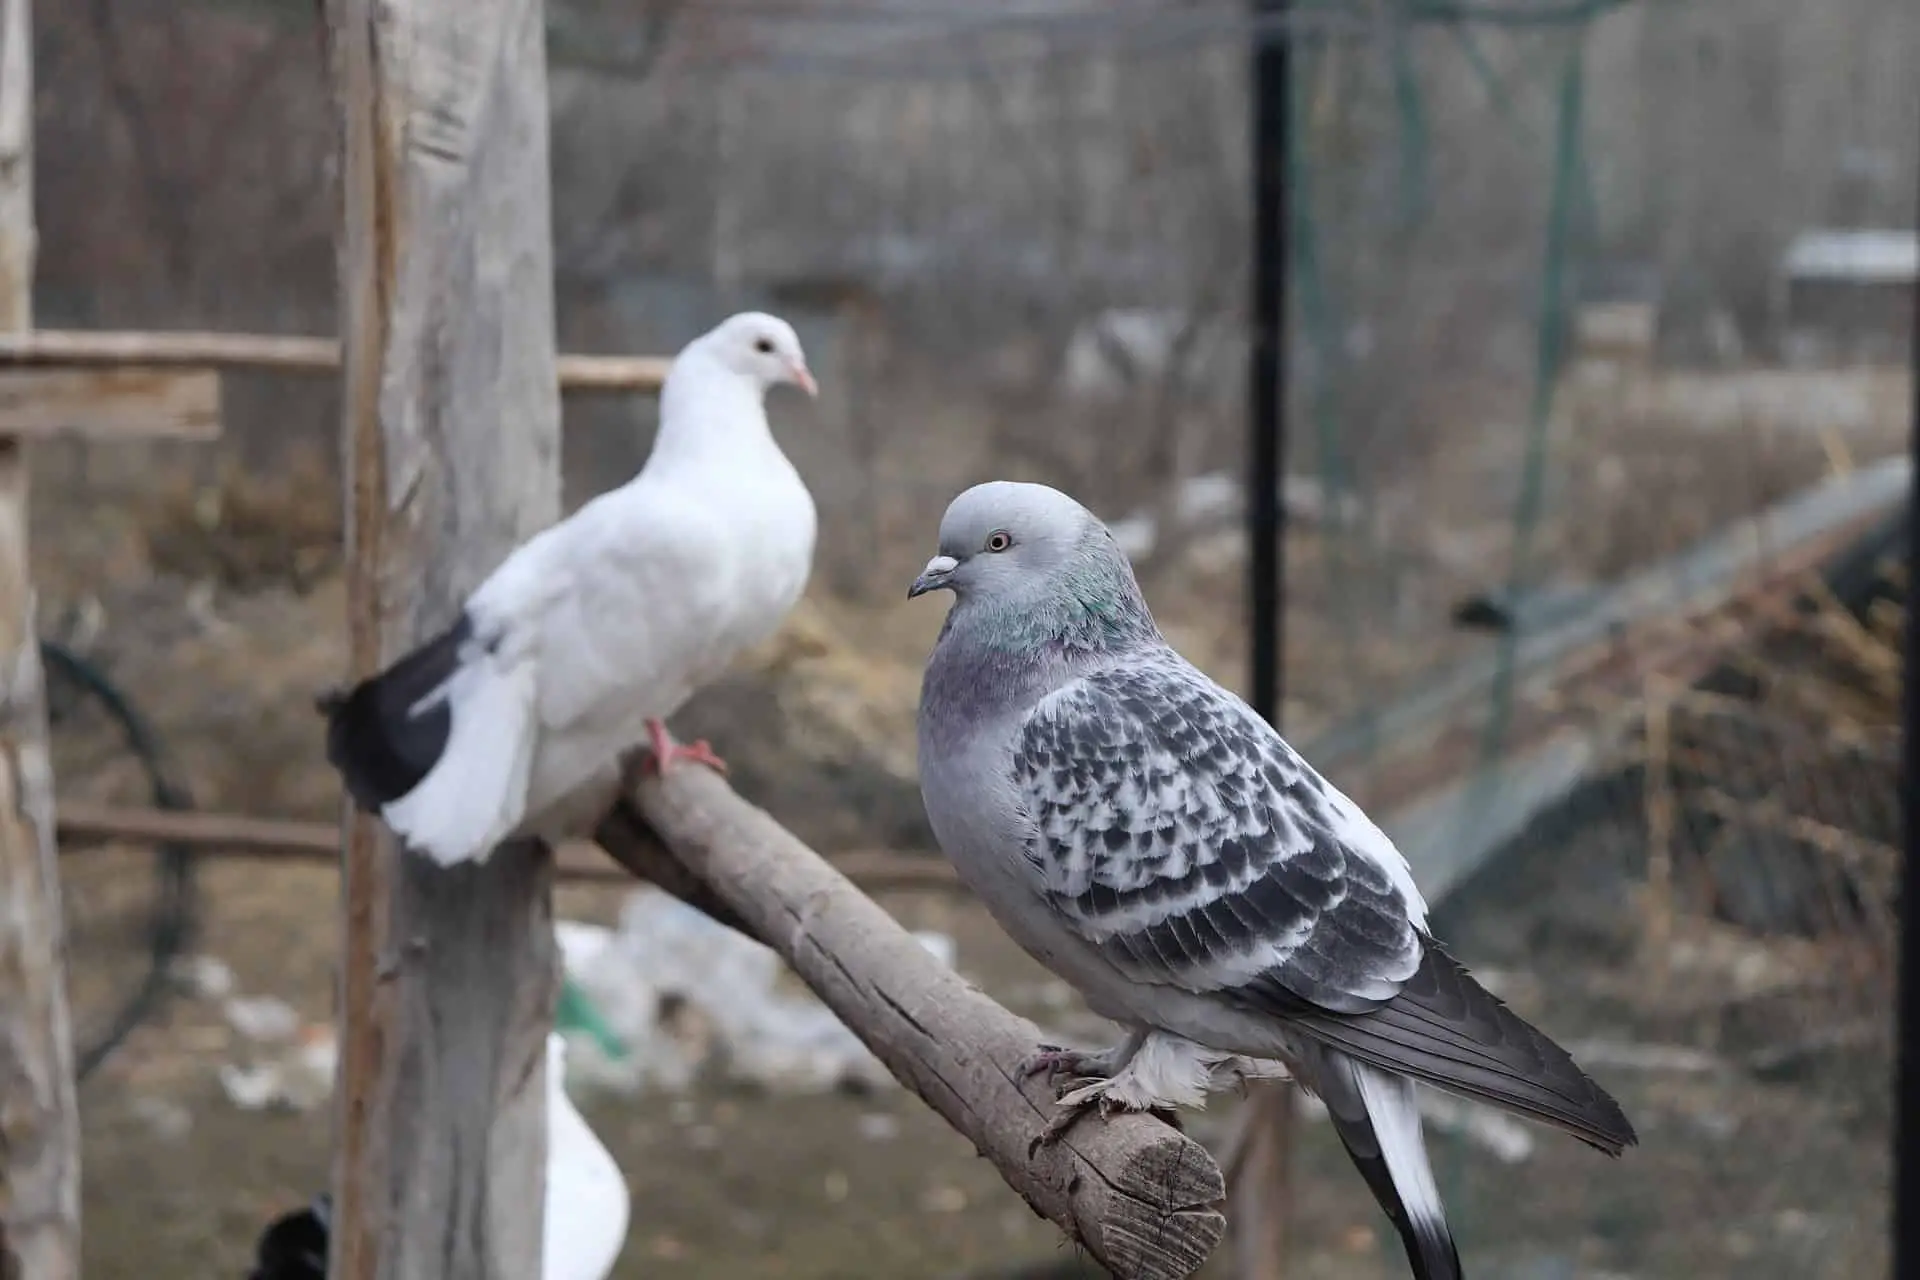 Tumbler pigeons